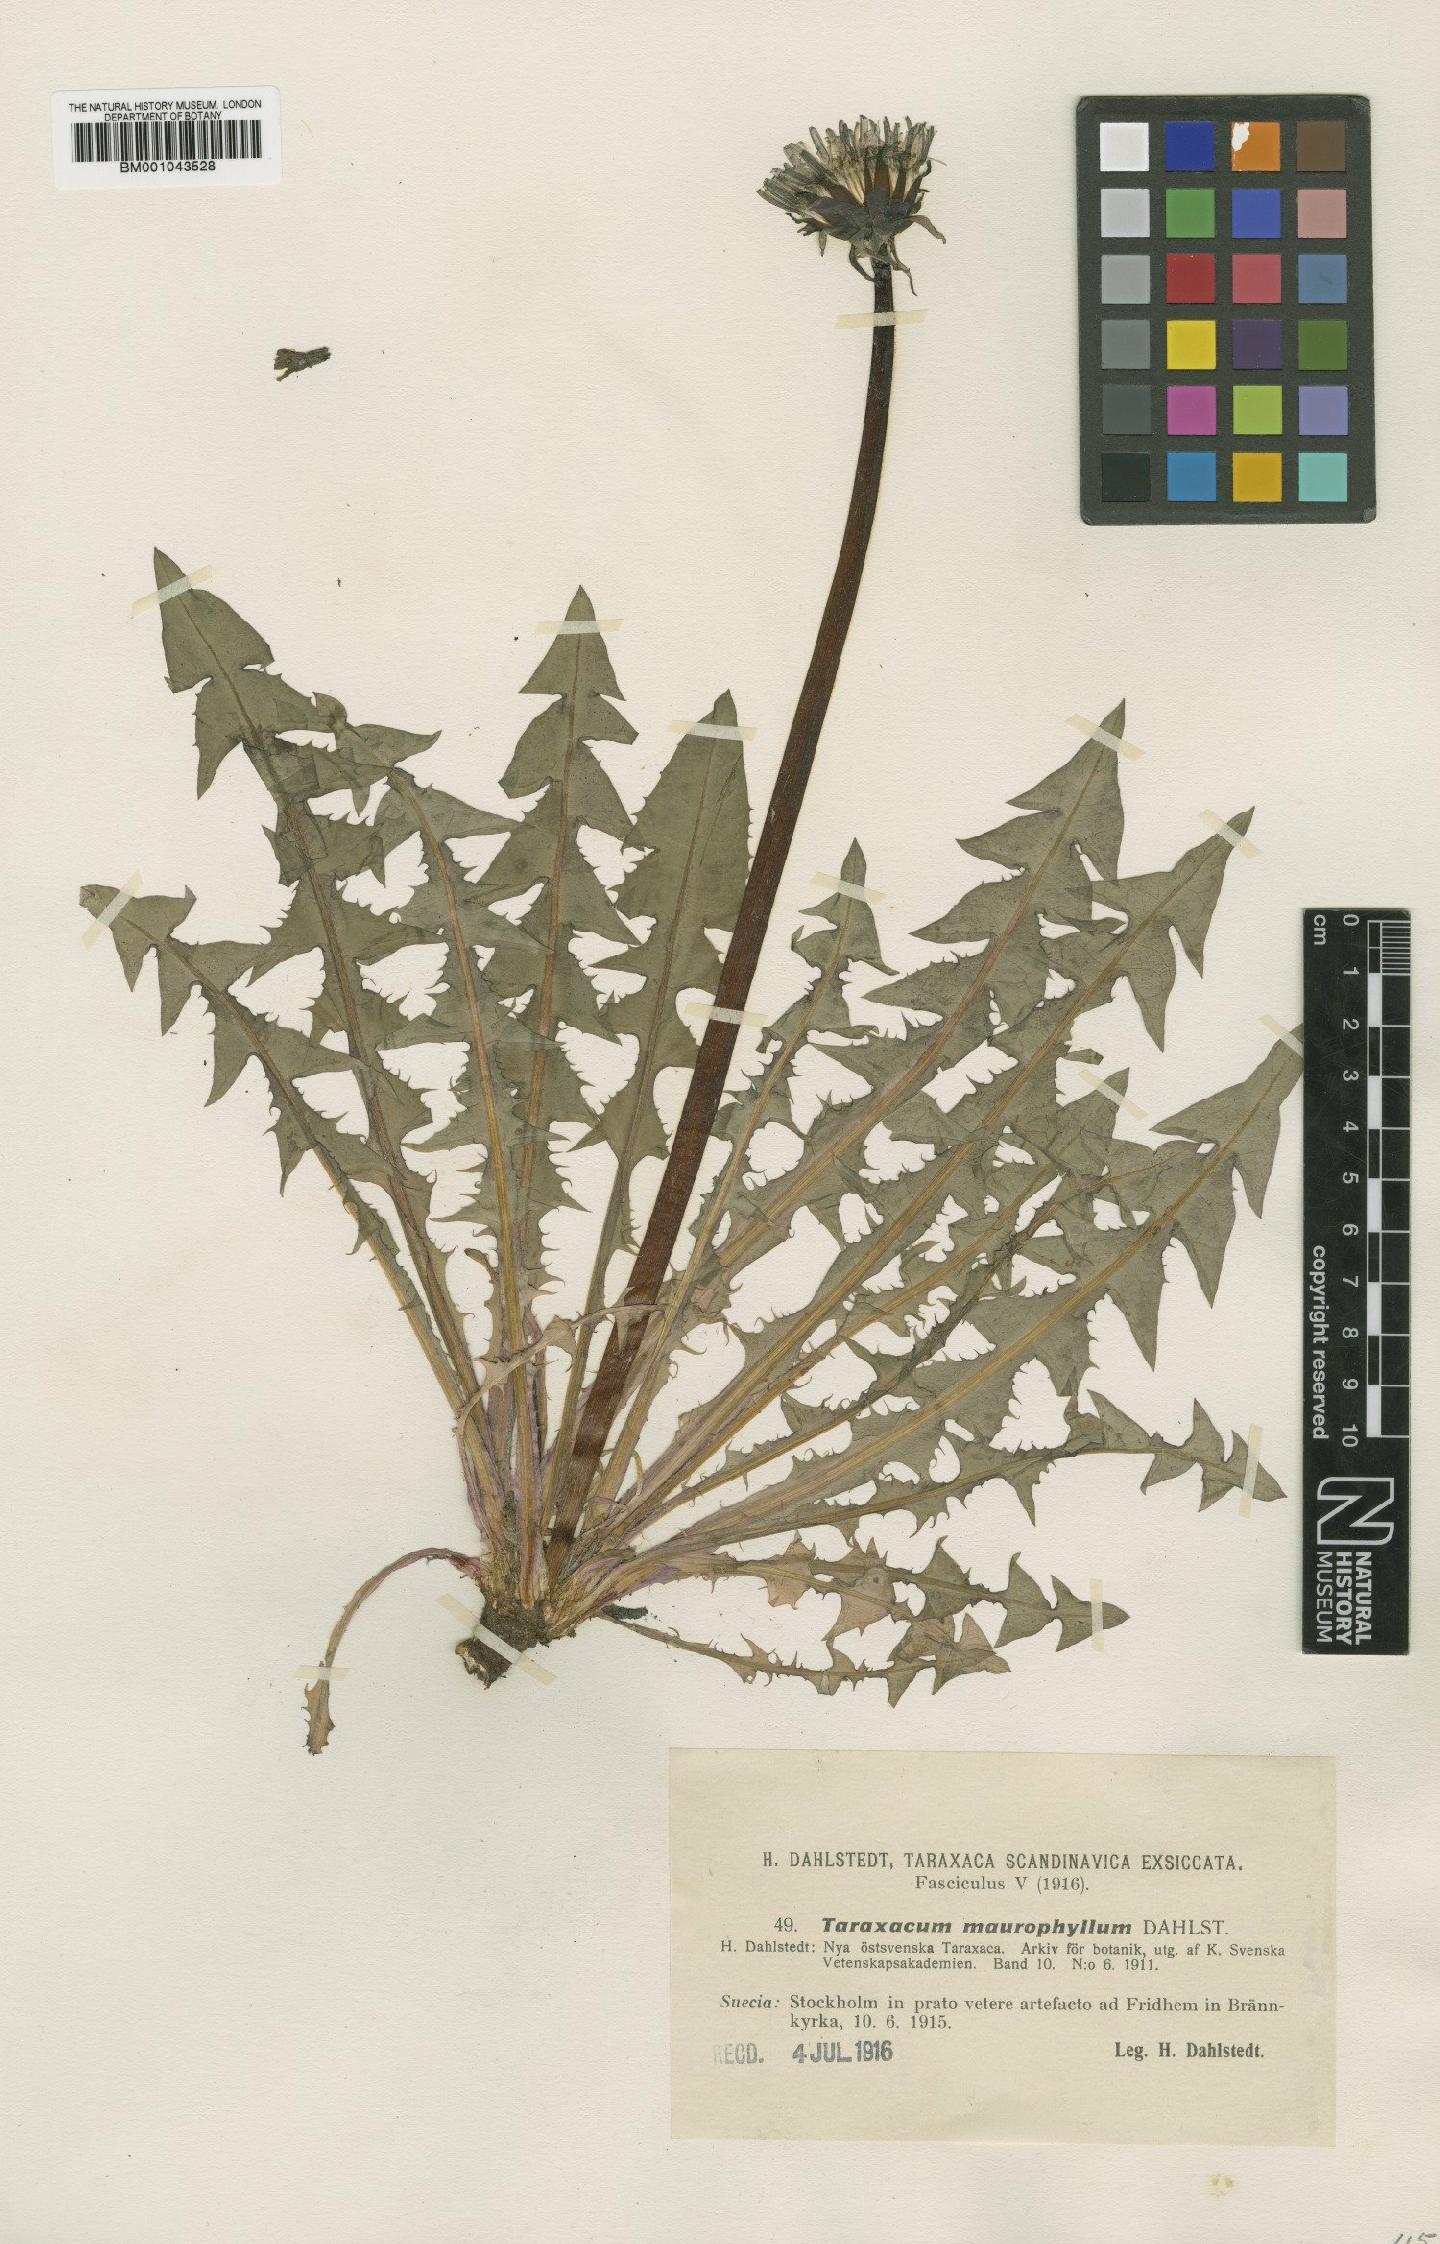 To NHMUK collection (Taraxacum maurophyllum Dahlst.; Type; NHMUK:ecatalogue:1999325)